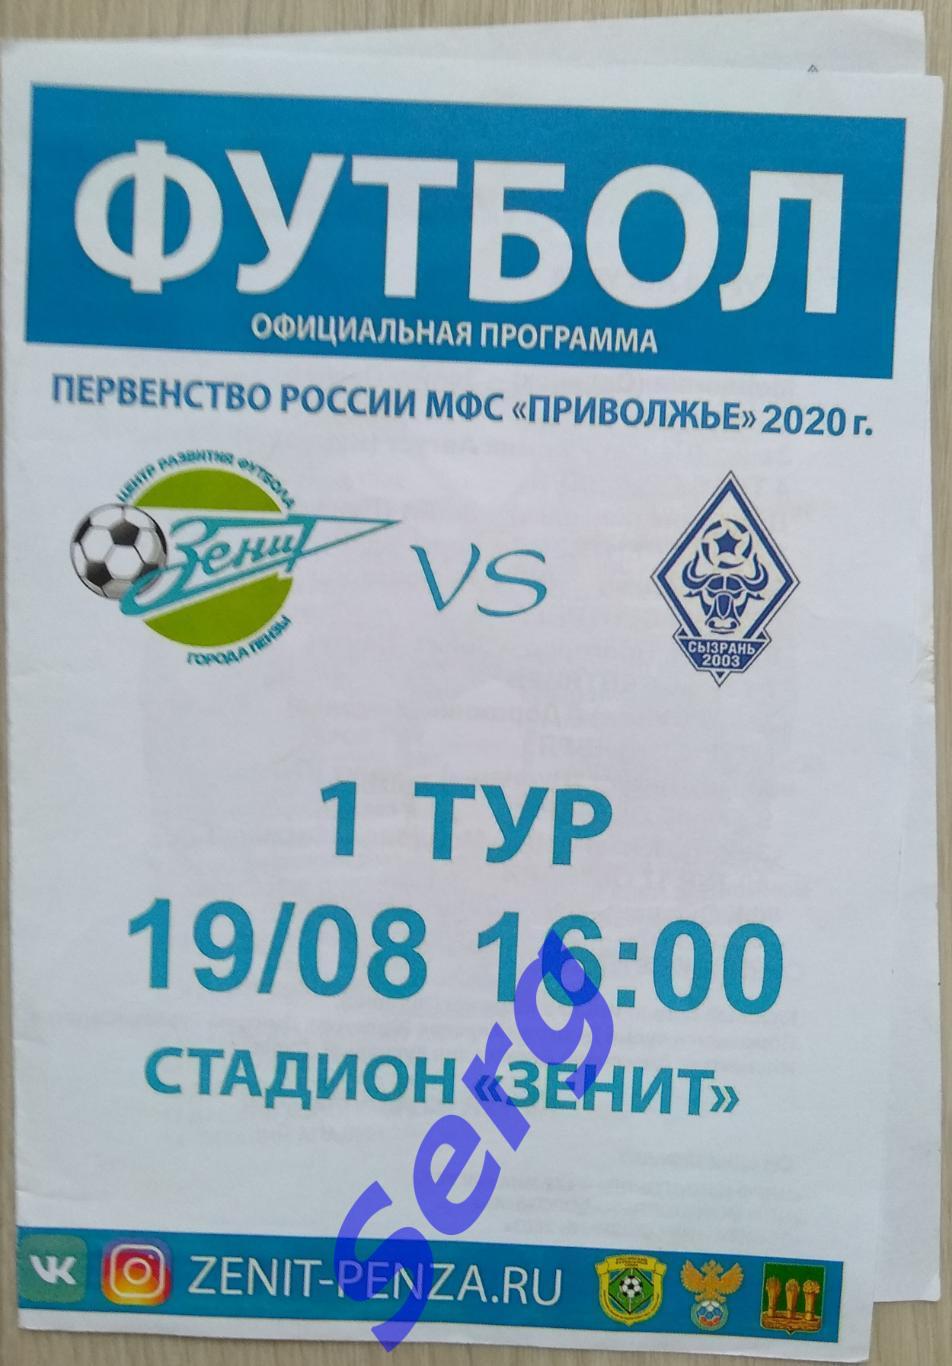 Зенит Пенза - ФК Сызрань-2003 Сызрань - 19 августа 2020 год